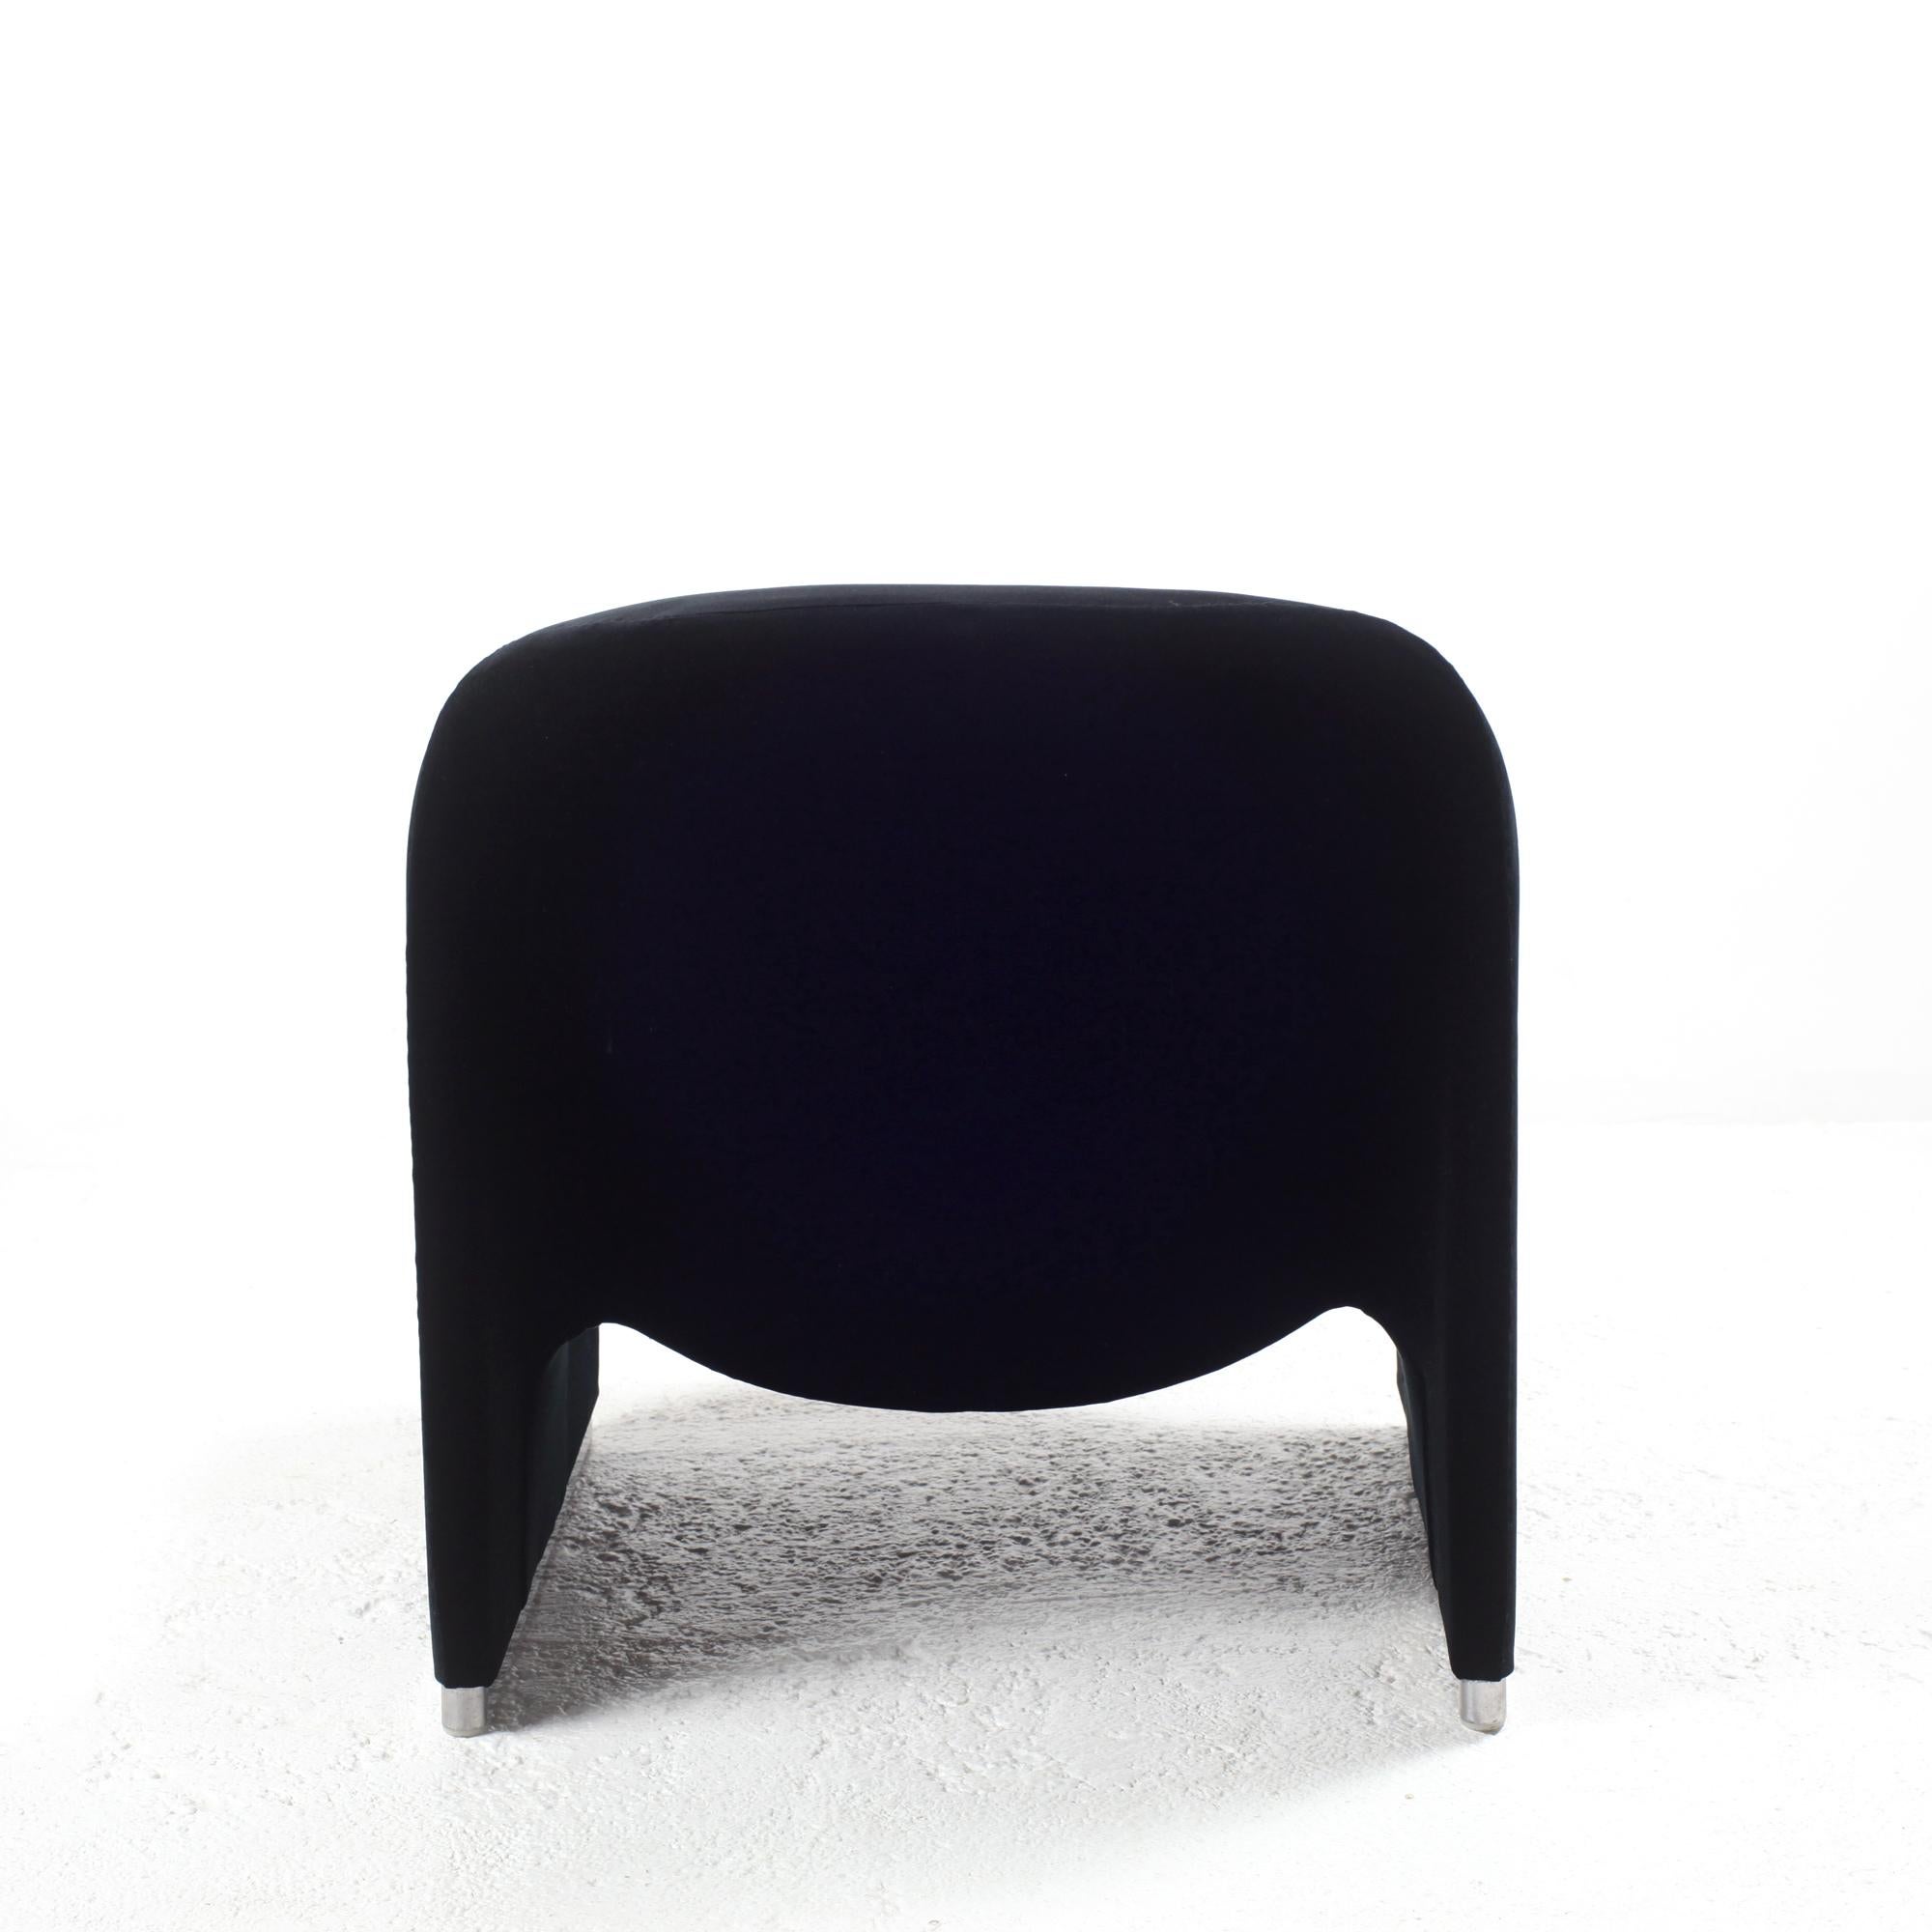 Italian Giancarlo Piretti “Alky” Chair in New Black Velvet, for Castelli Italy, 1970s